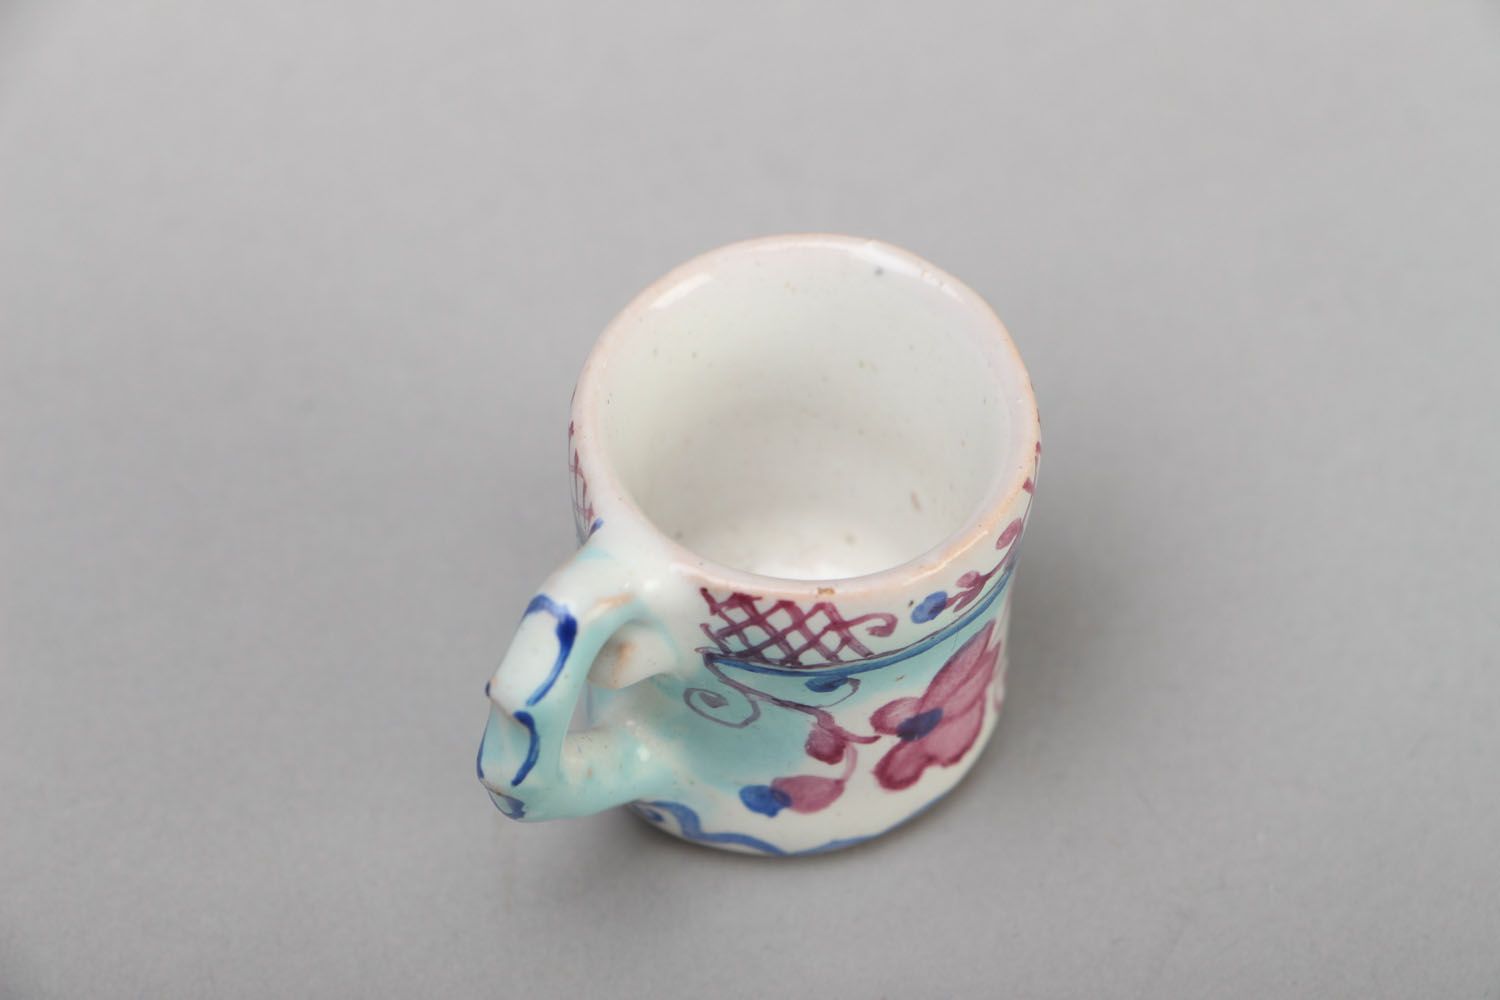 1 oz espresso decorative cup wth handle in white and blue color photo 3